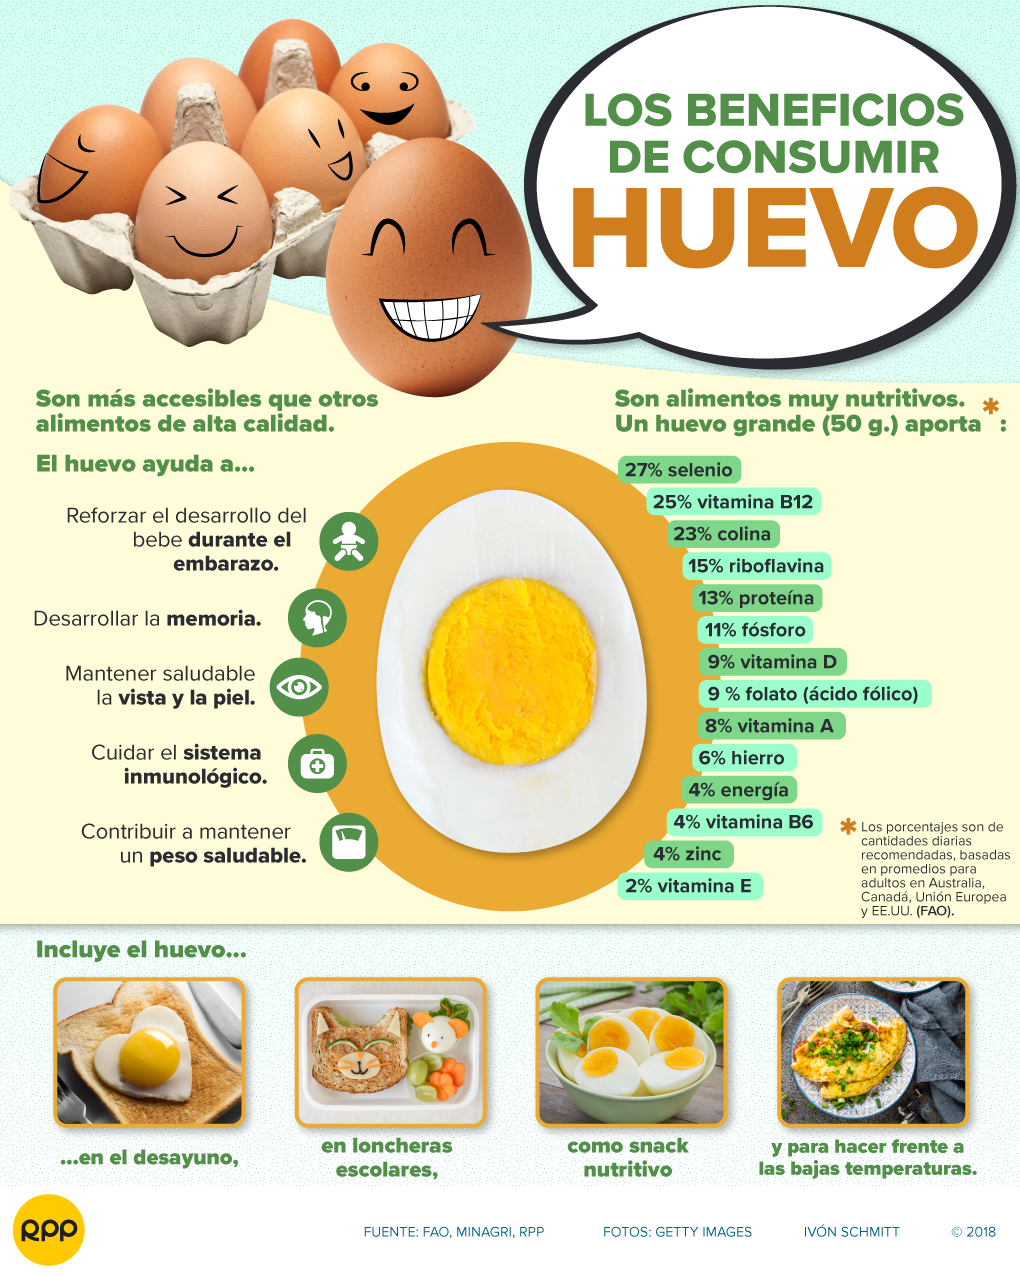 Por qué es bueno comer huevo duro